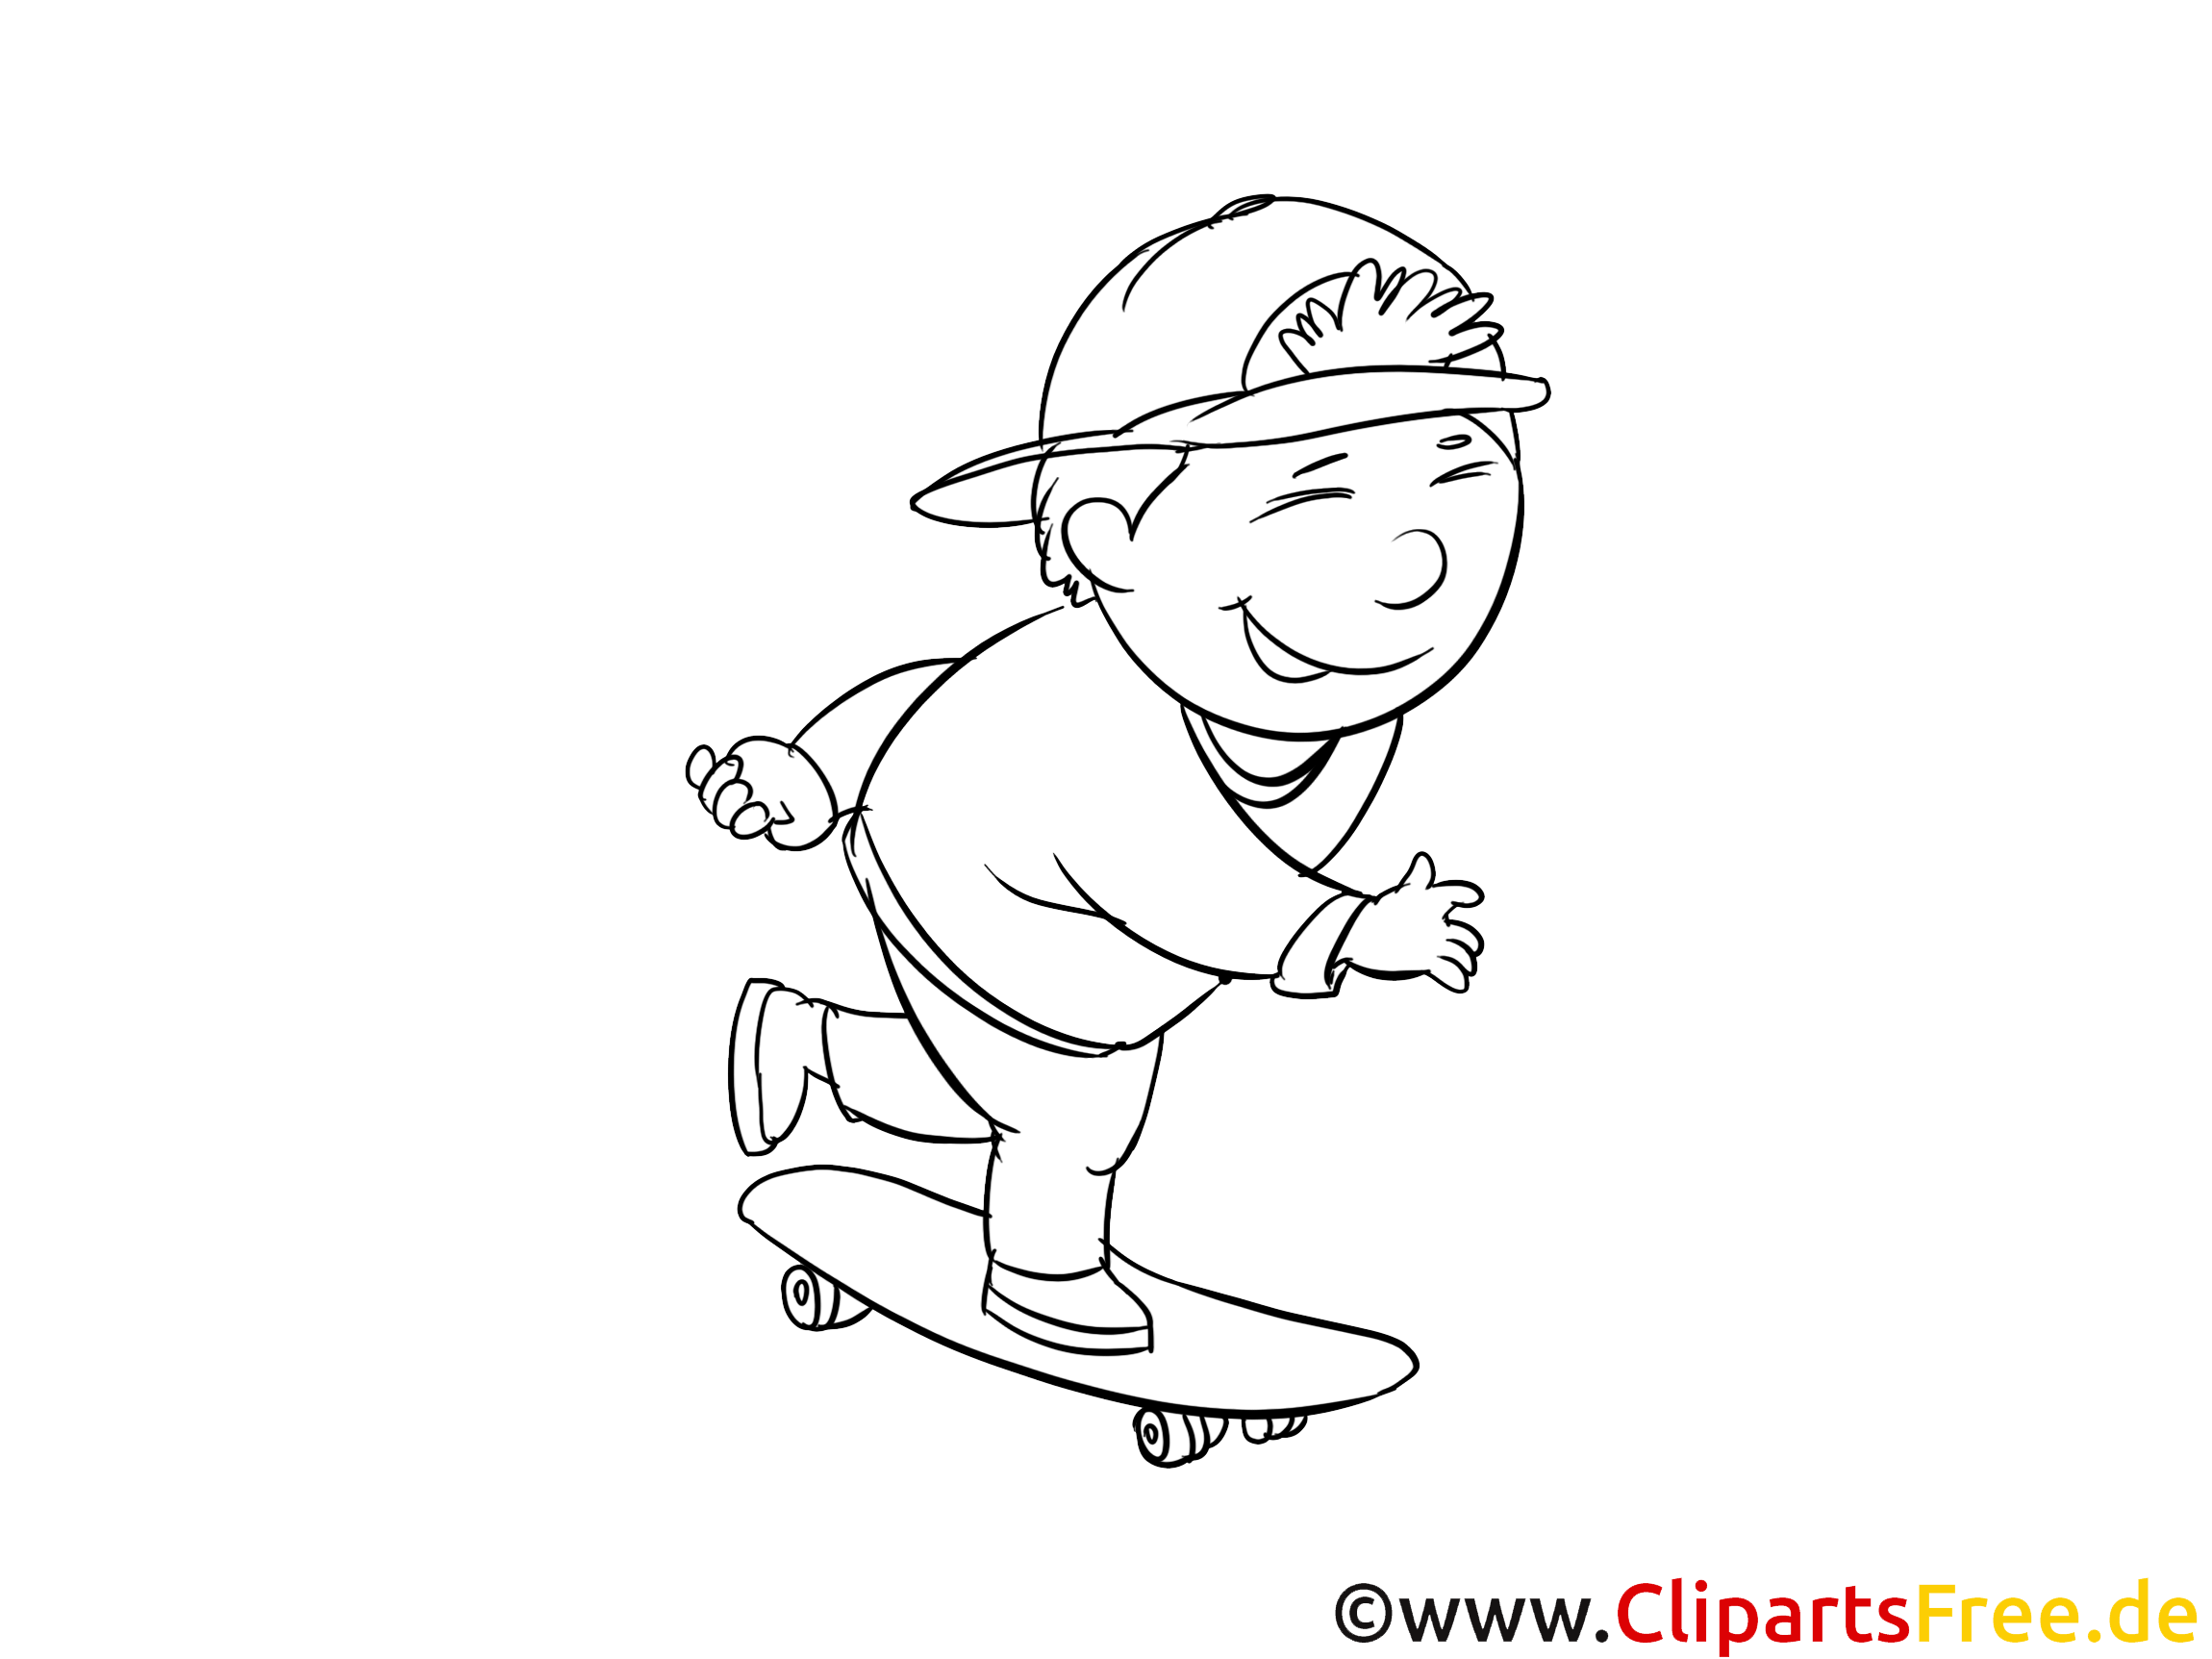 Skateboard clip art gratuit – Maternelle à colorier